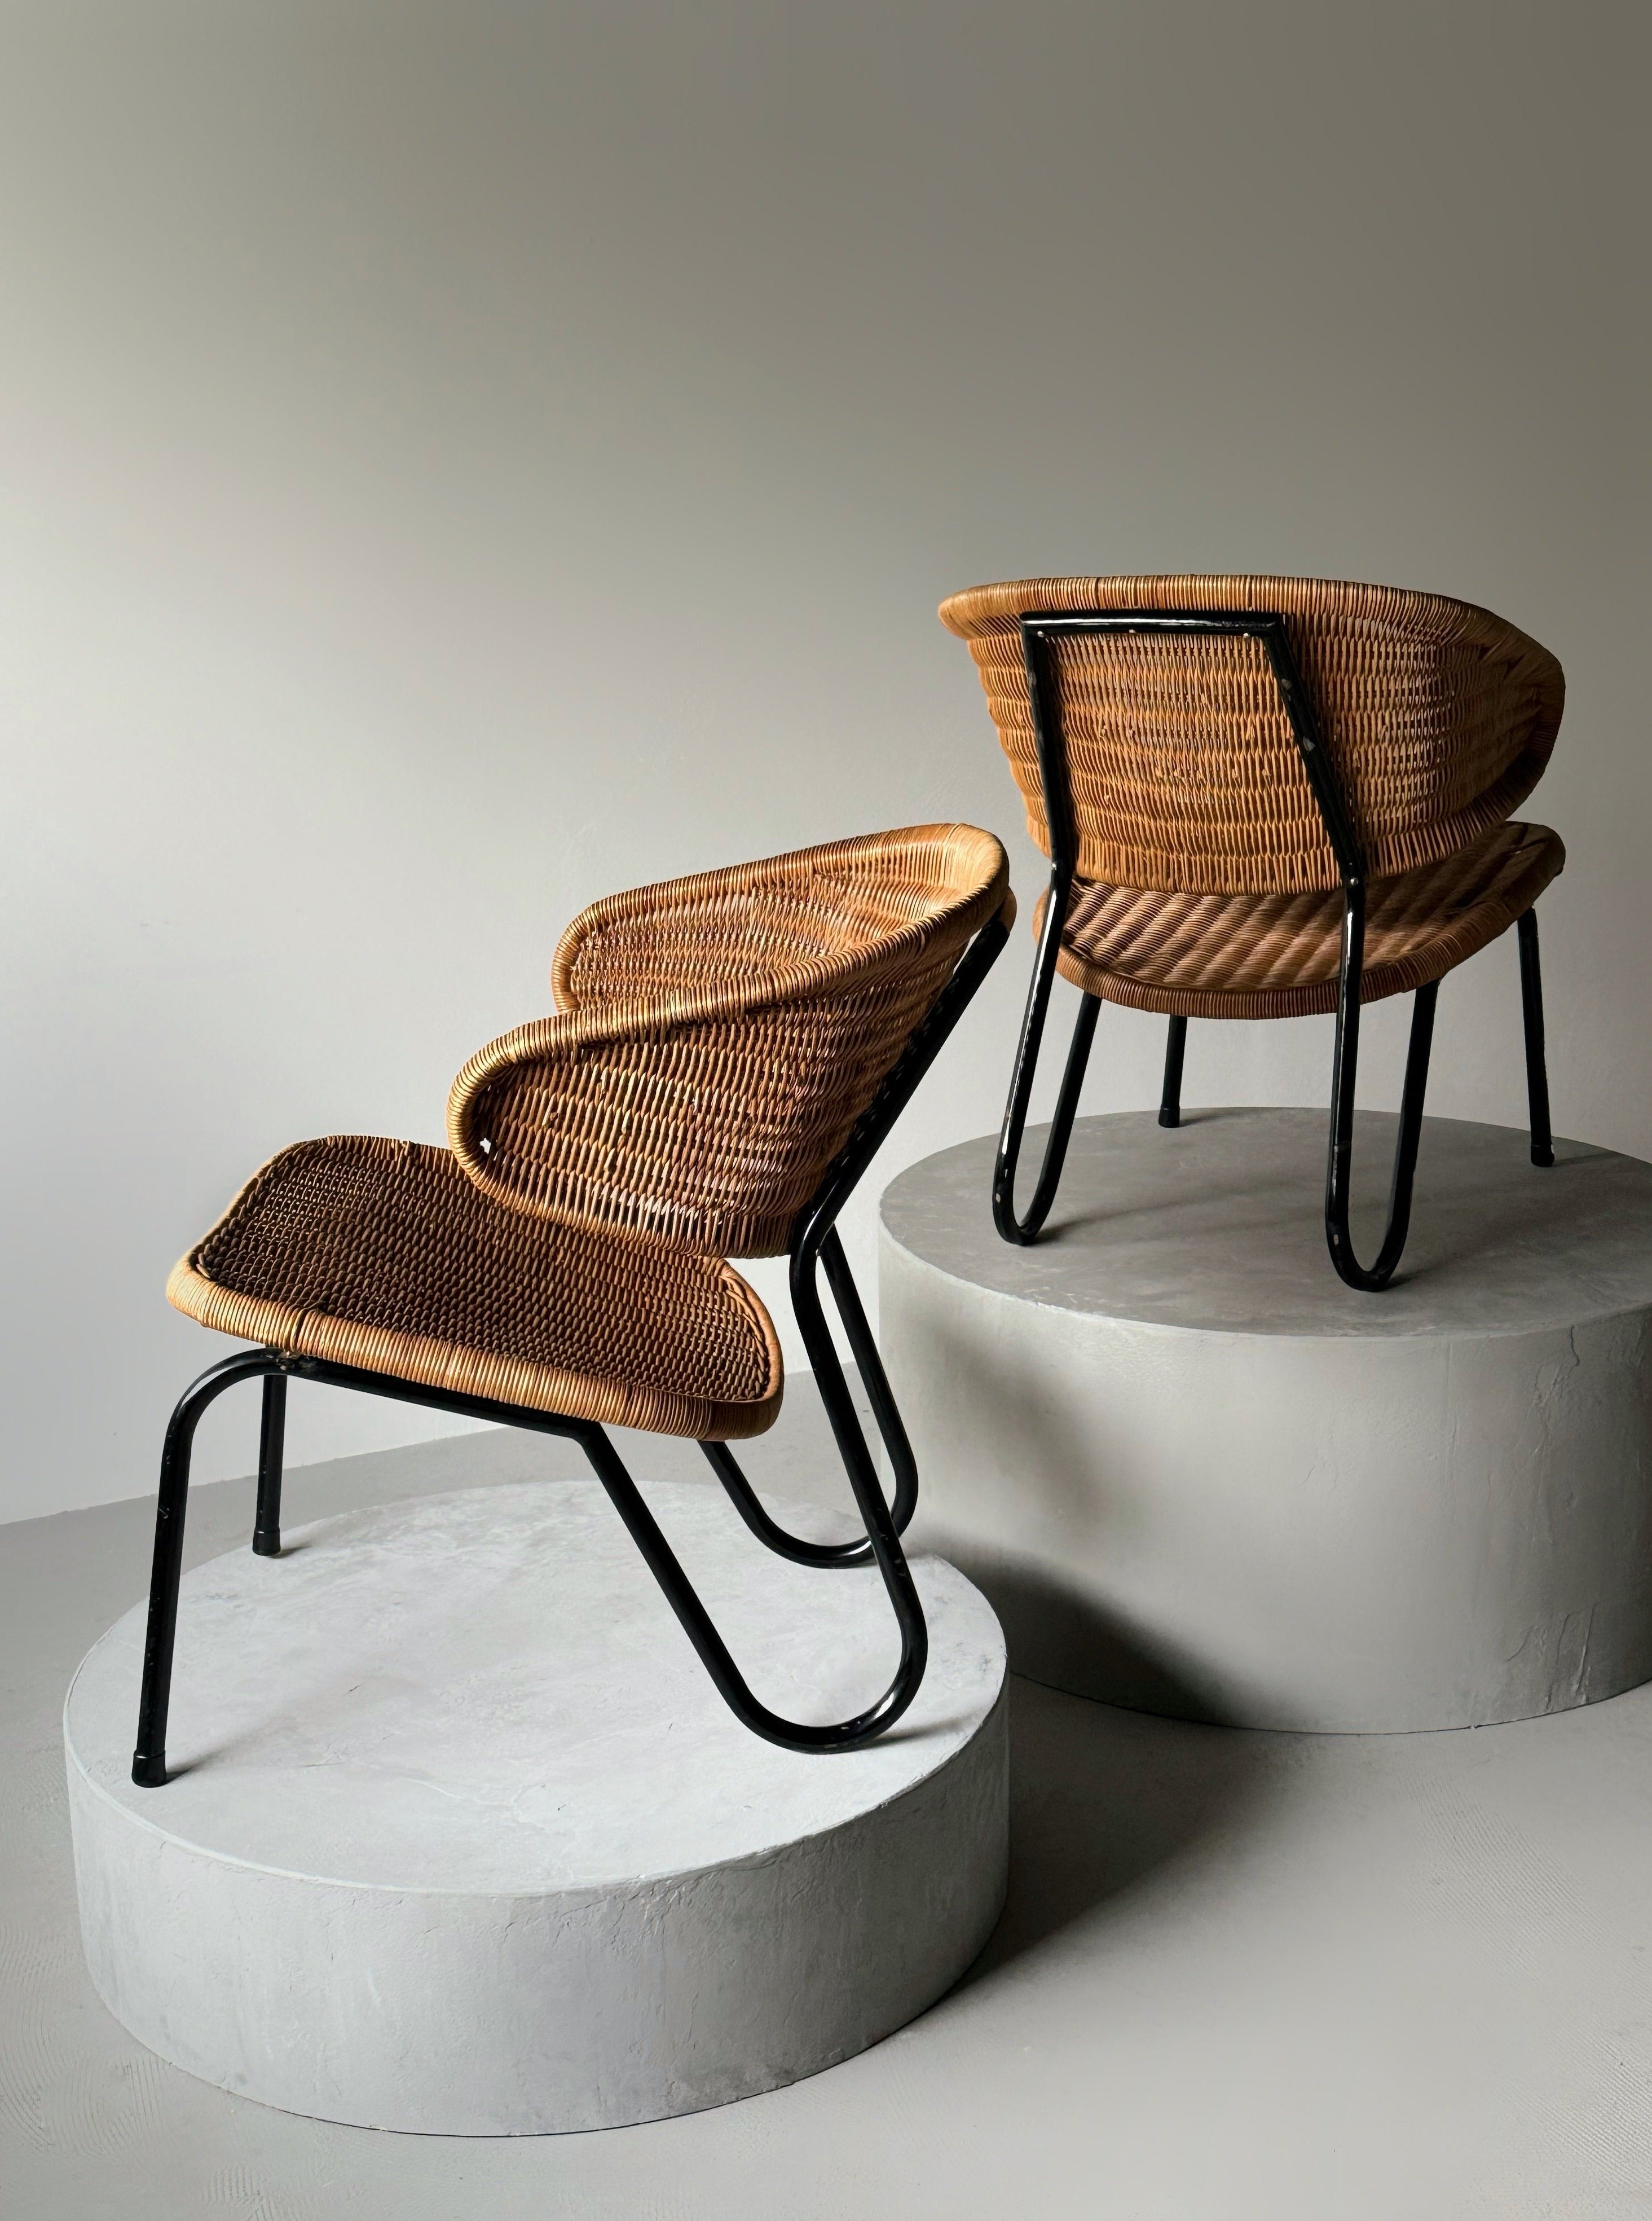 Set of 2 Easy Chair in Rattan by Dirk Van Slighted